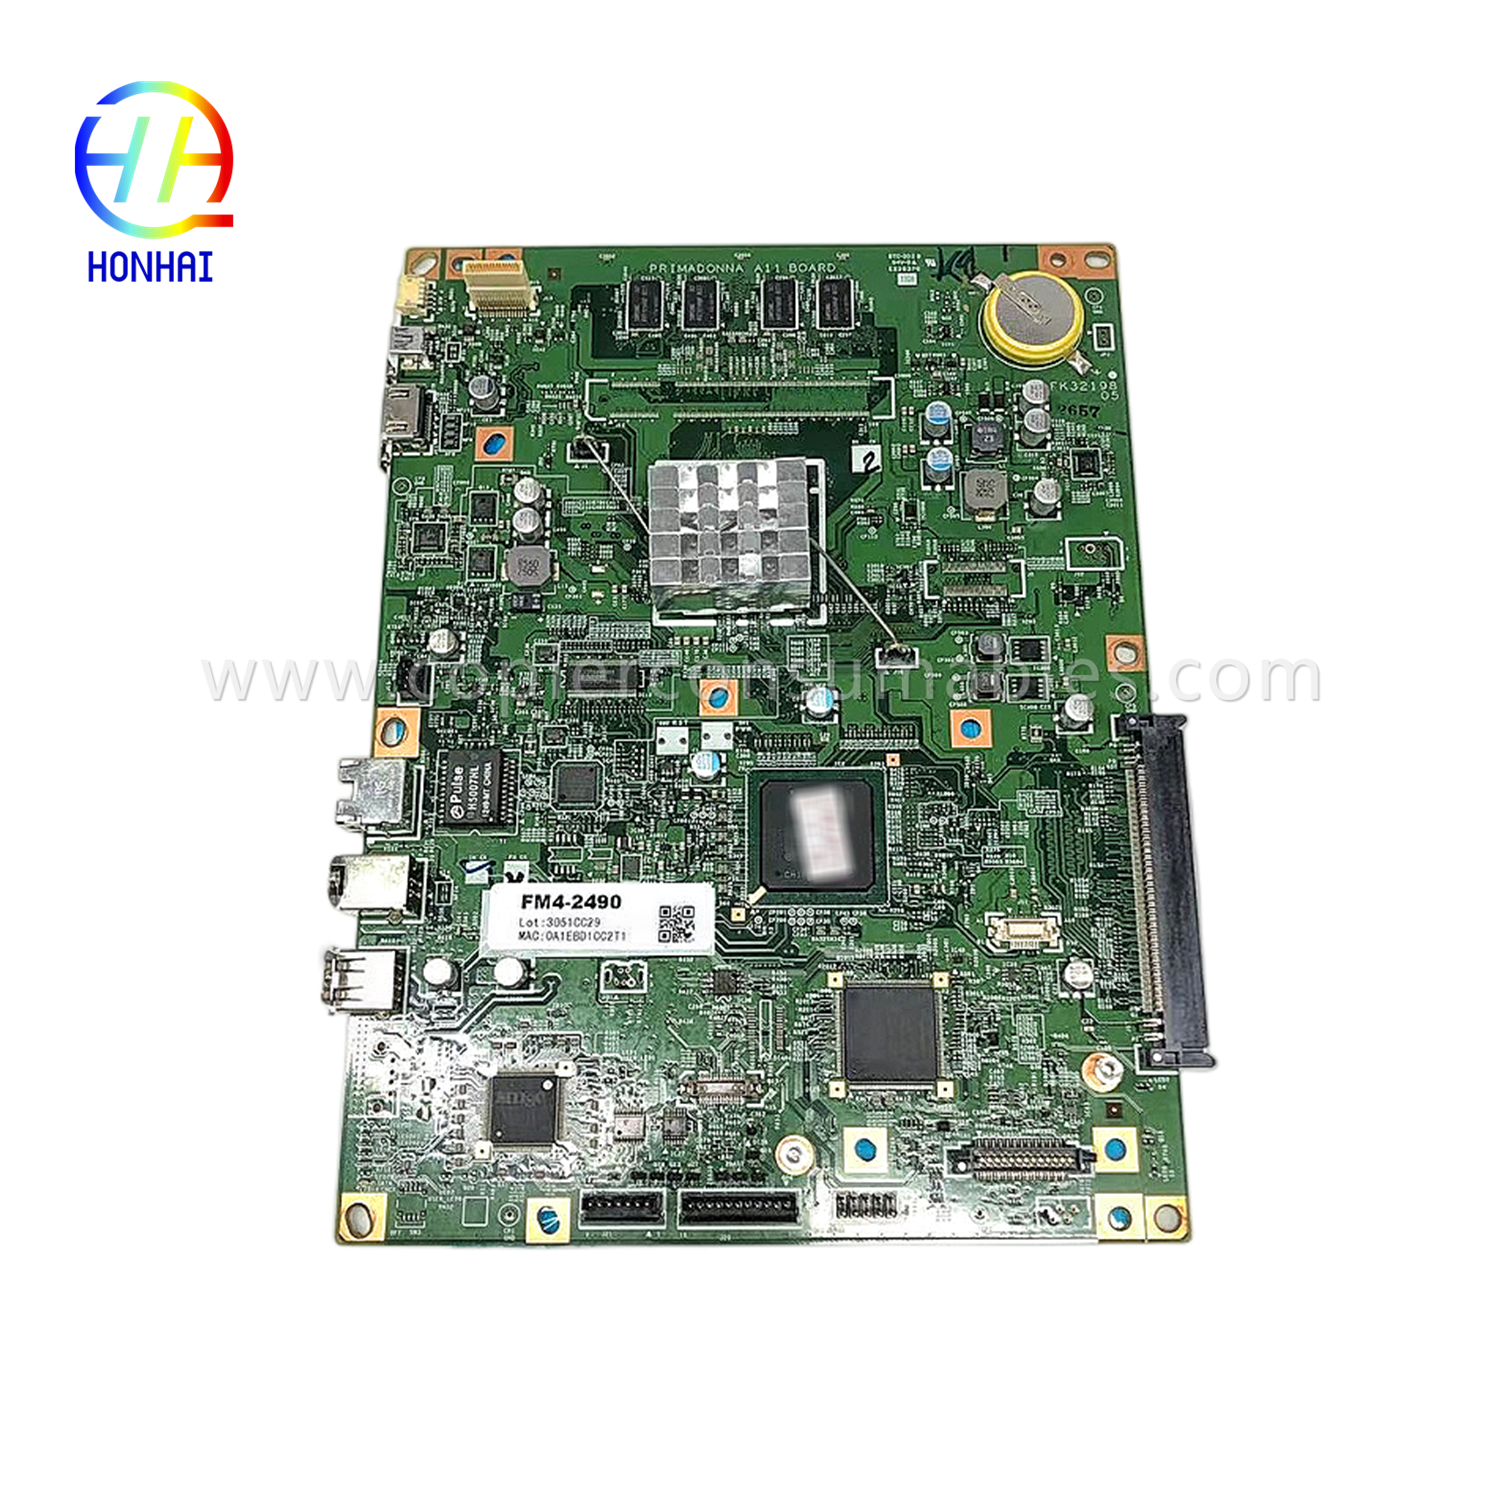 Main Controller PCB Board ho an'ny Canon IR Adv 8285 OEM (FM4-2490-000) (1)